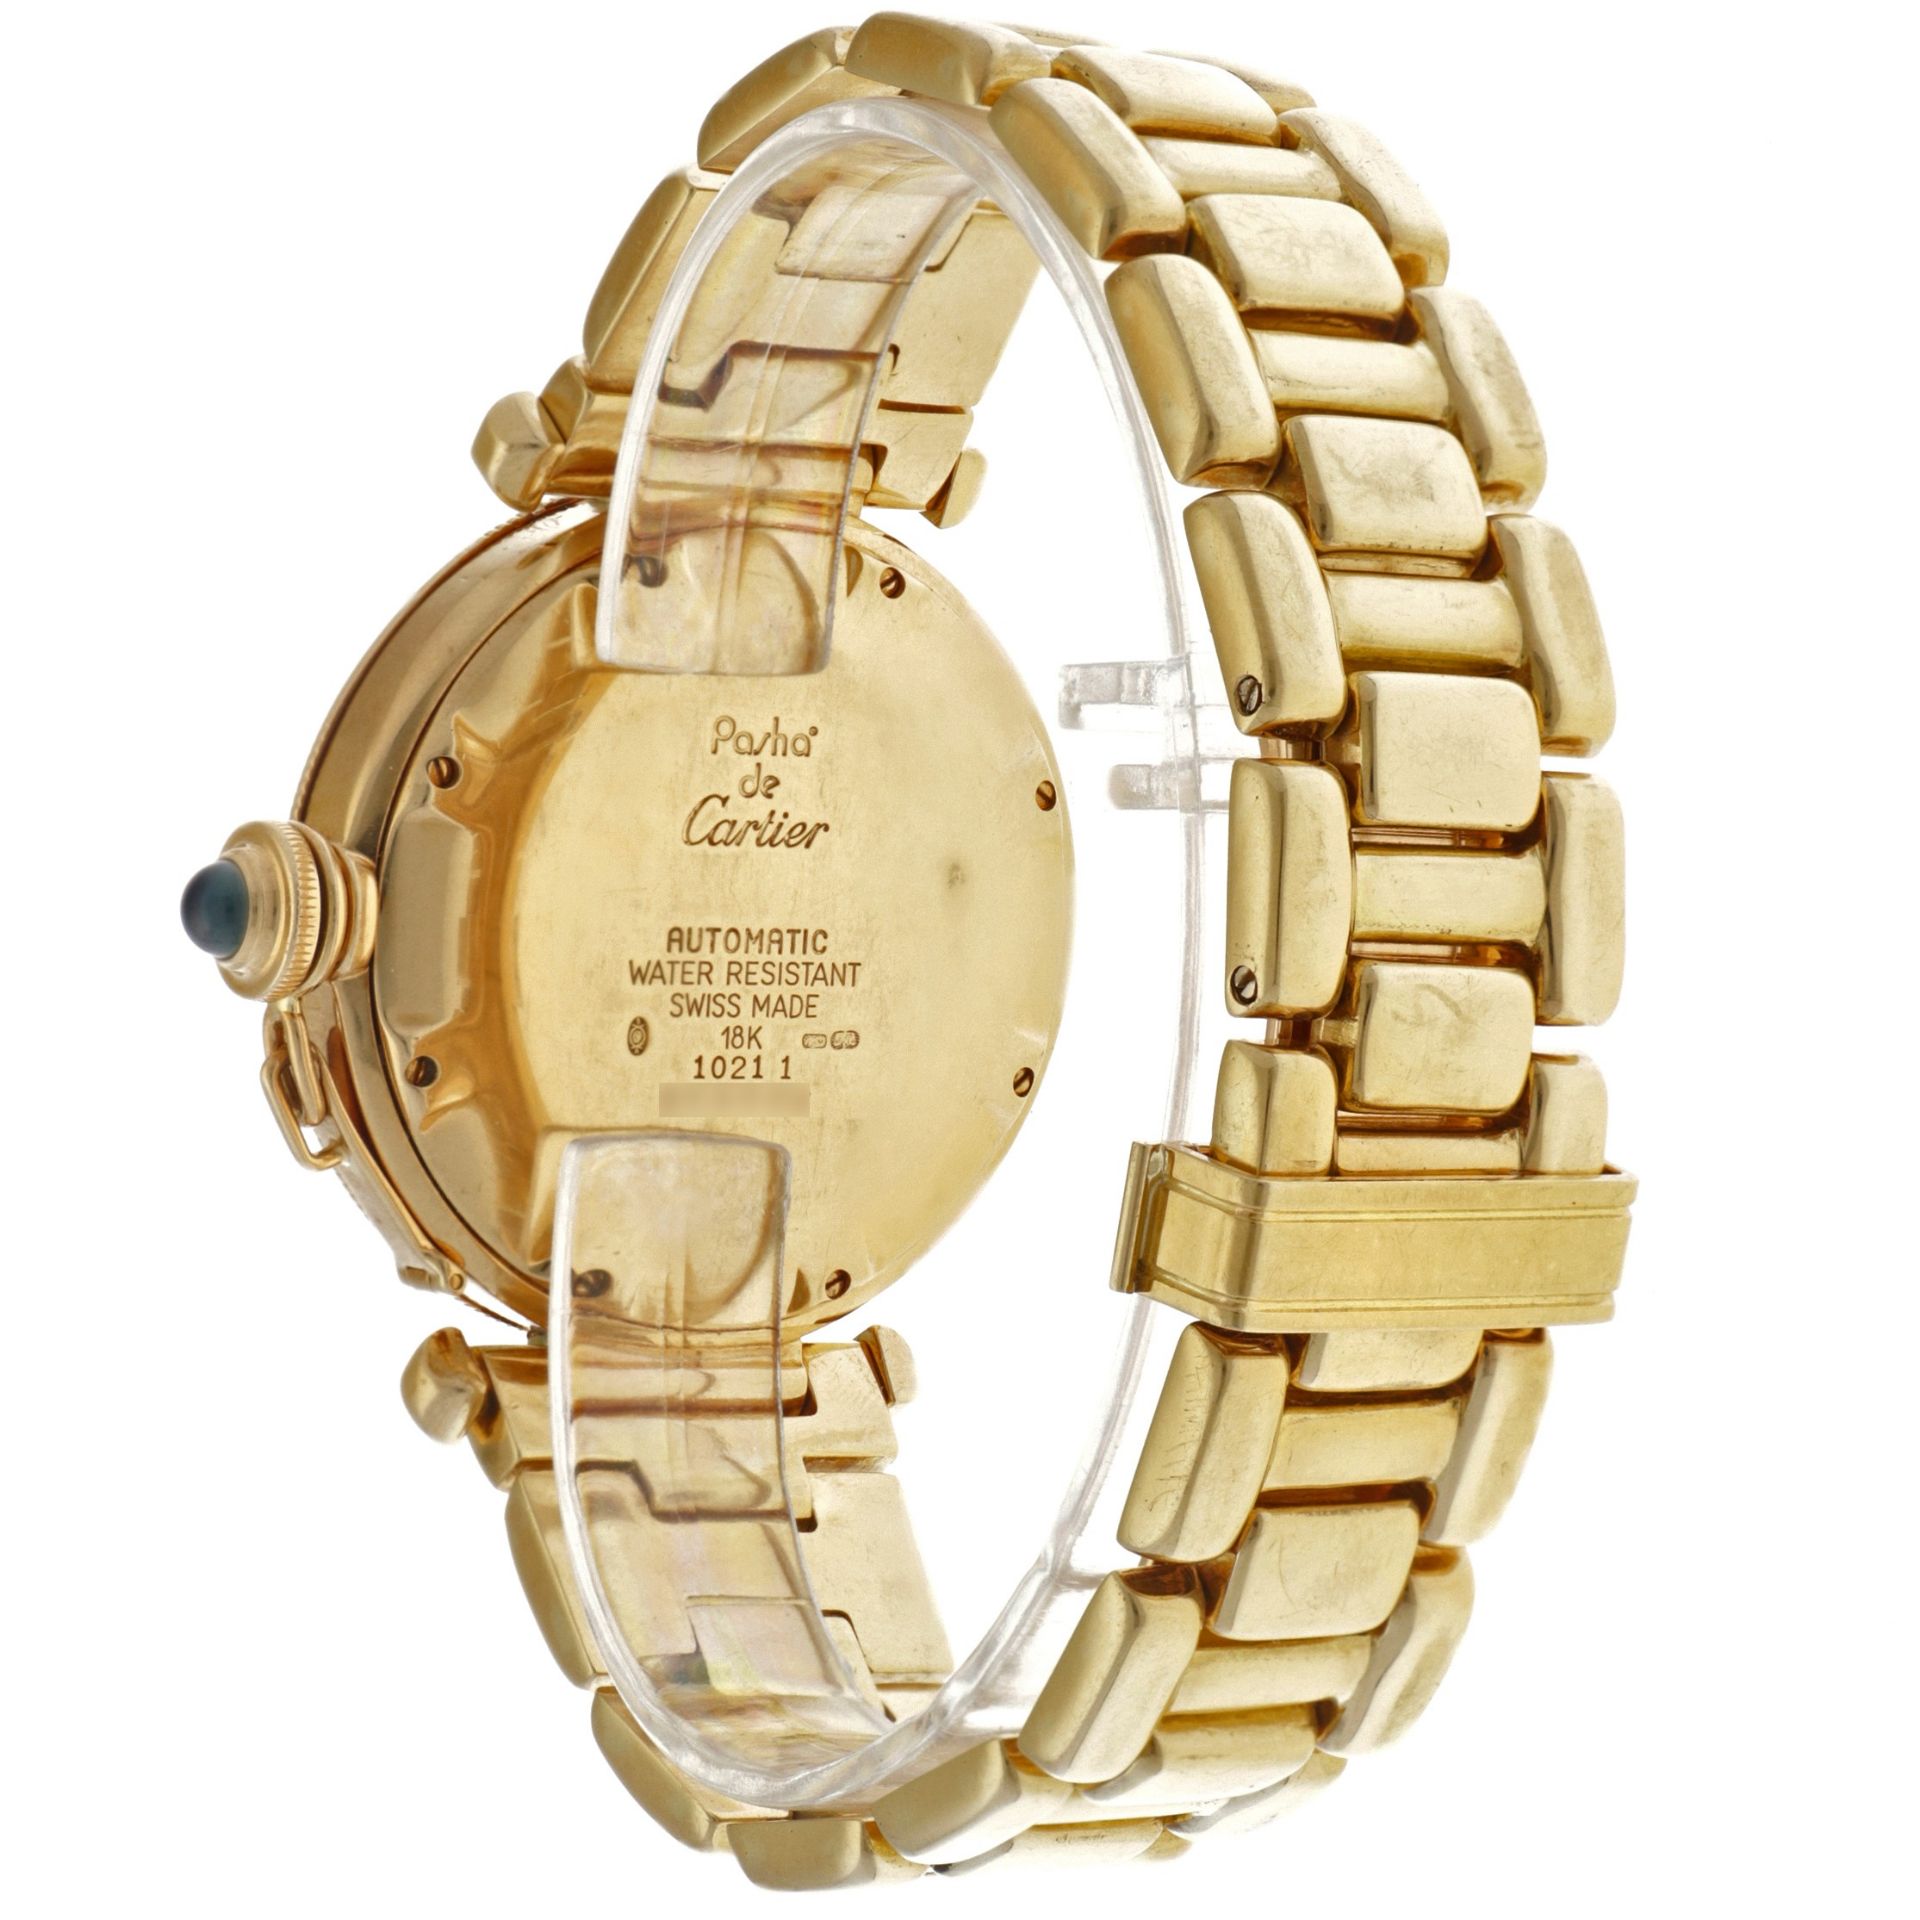 Cartier Pasha 18K. 1021 1 - Men's watch.  - Image 3 of 5